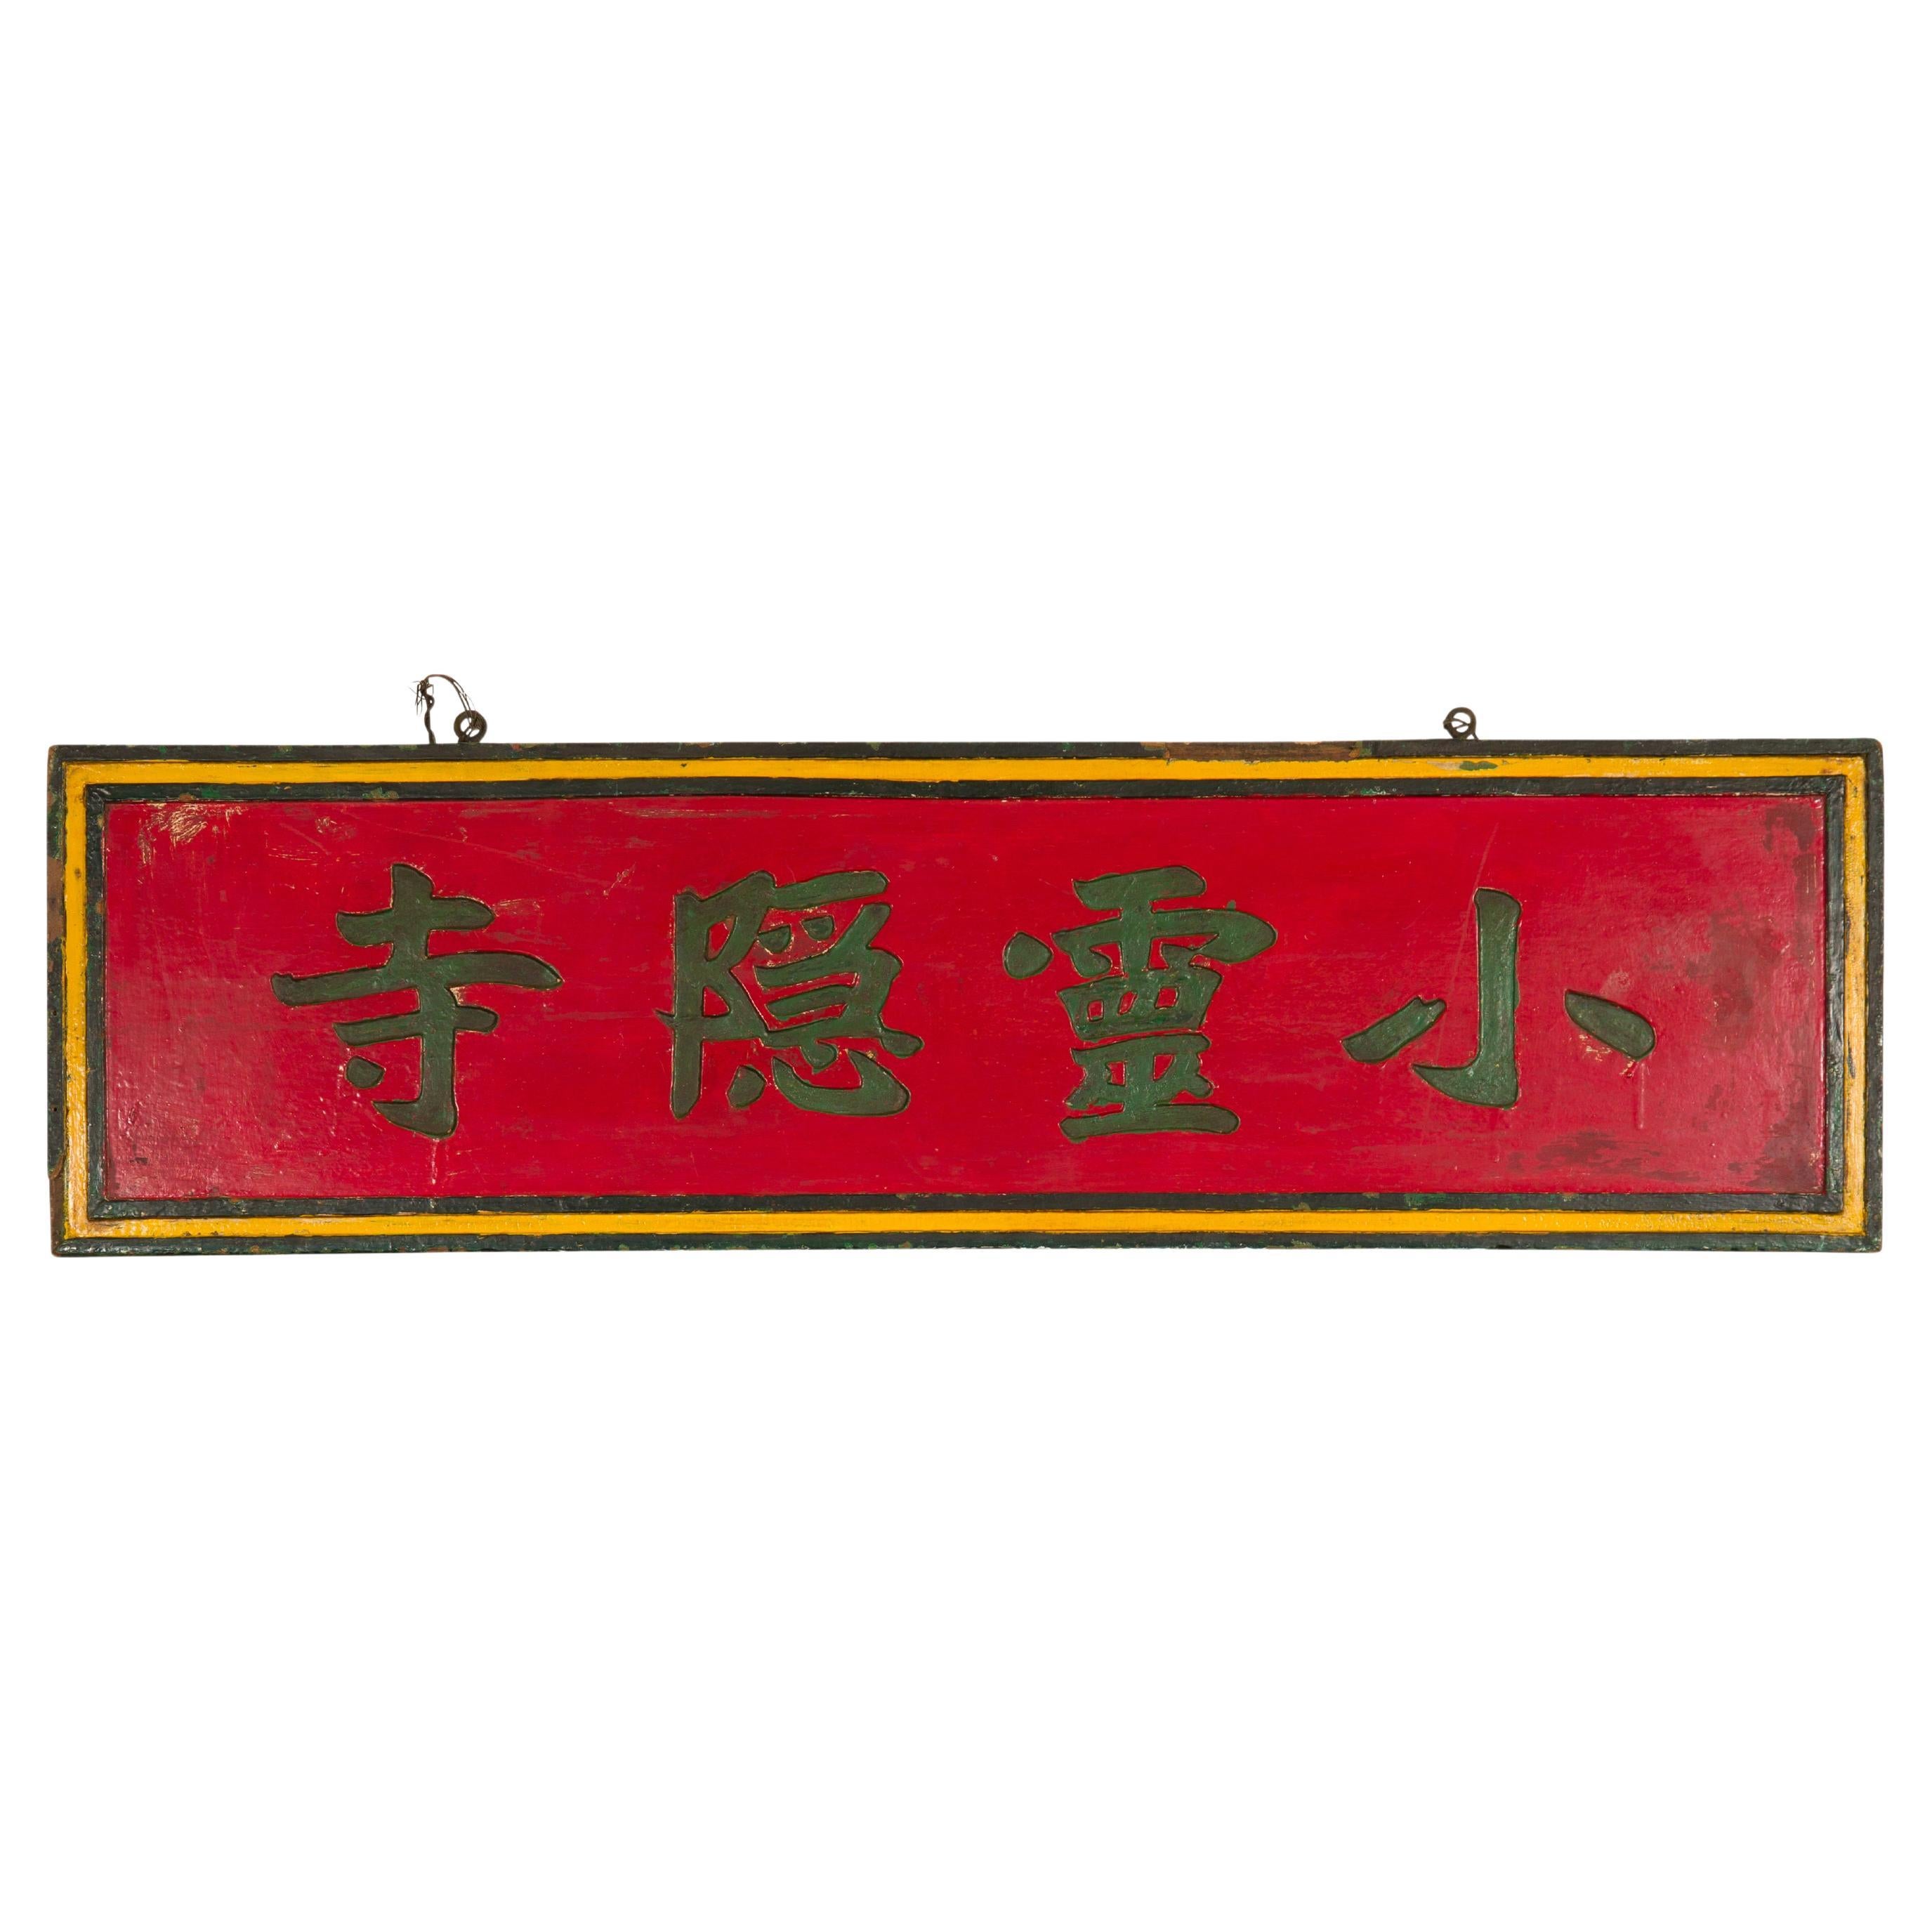 Panneau d'atelier chinois en laque rouge de la fin de la dynastie Qing avec calligraphie sculptée